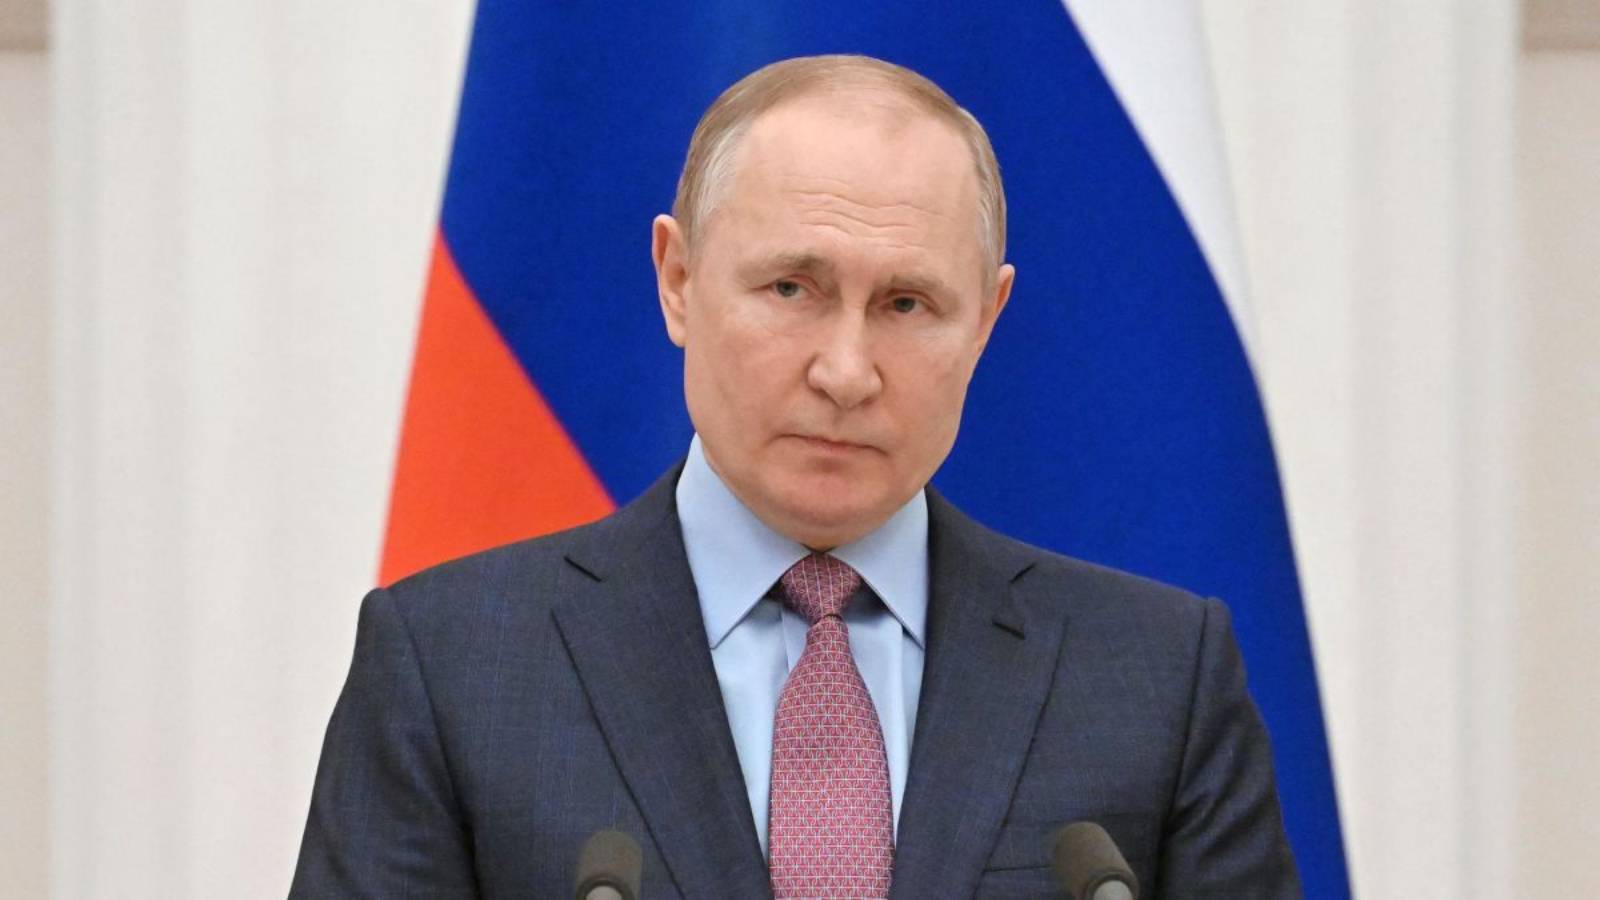 Vladimir Putin spune ca Nu vrea sa Distruga Ucraina in cadrul Razboiului